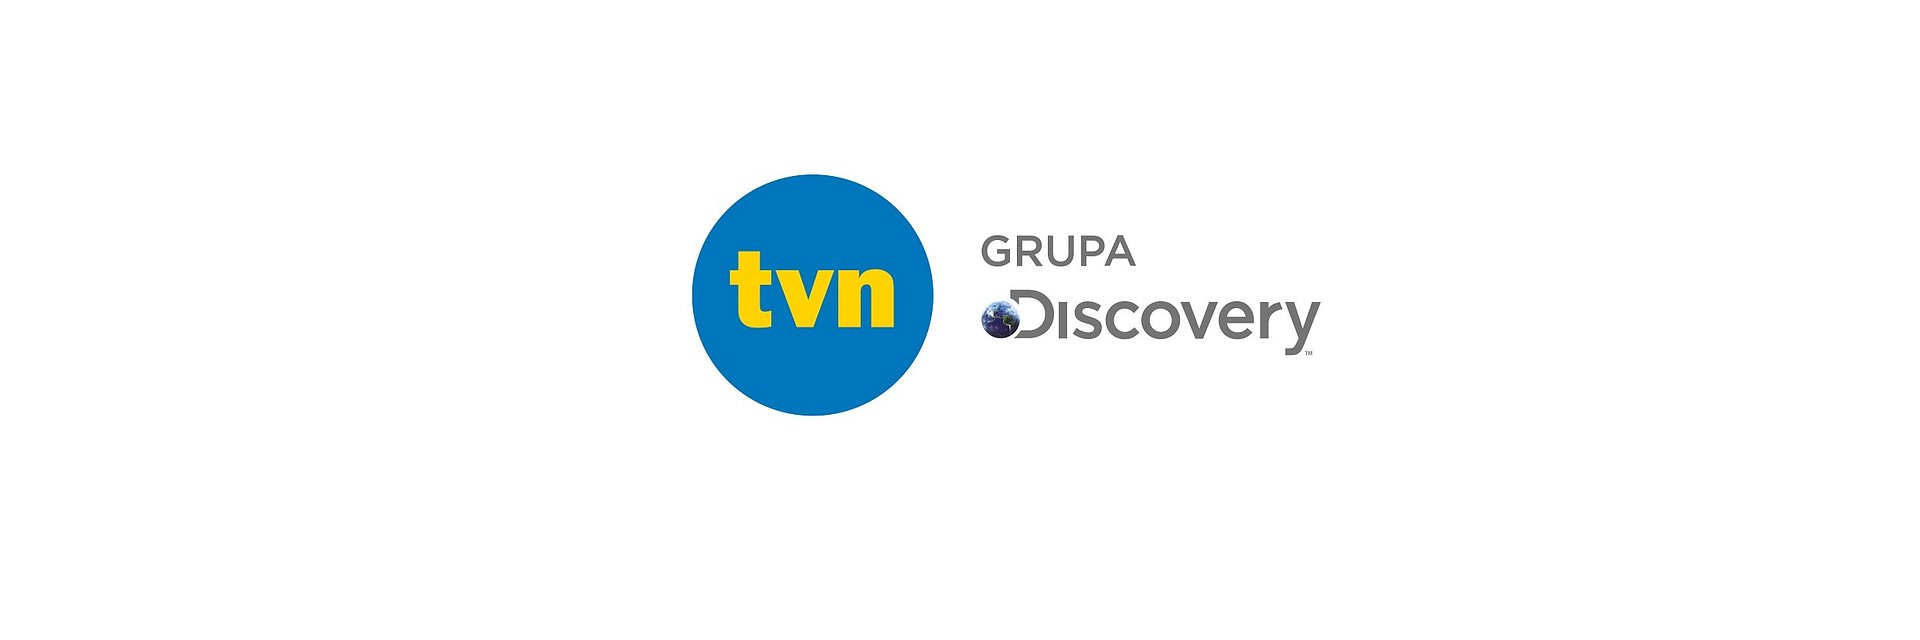 Świetne wyniki TVN Grupa Discovery potwierdzone w plebiscycie Telekamery „Tele Tygodnia”! Duży sukces Playera